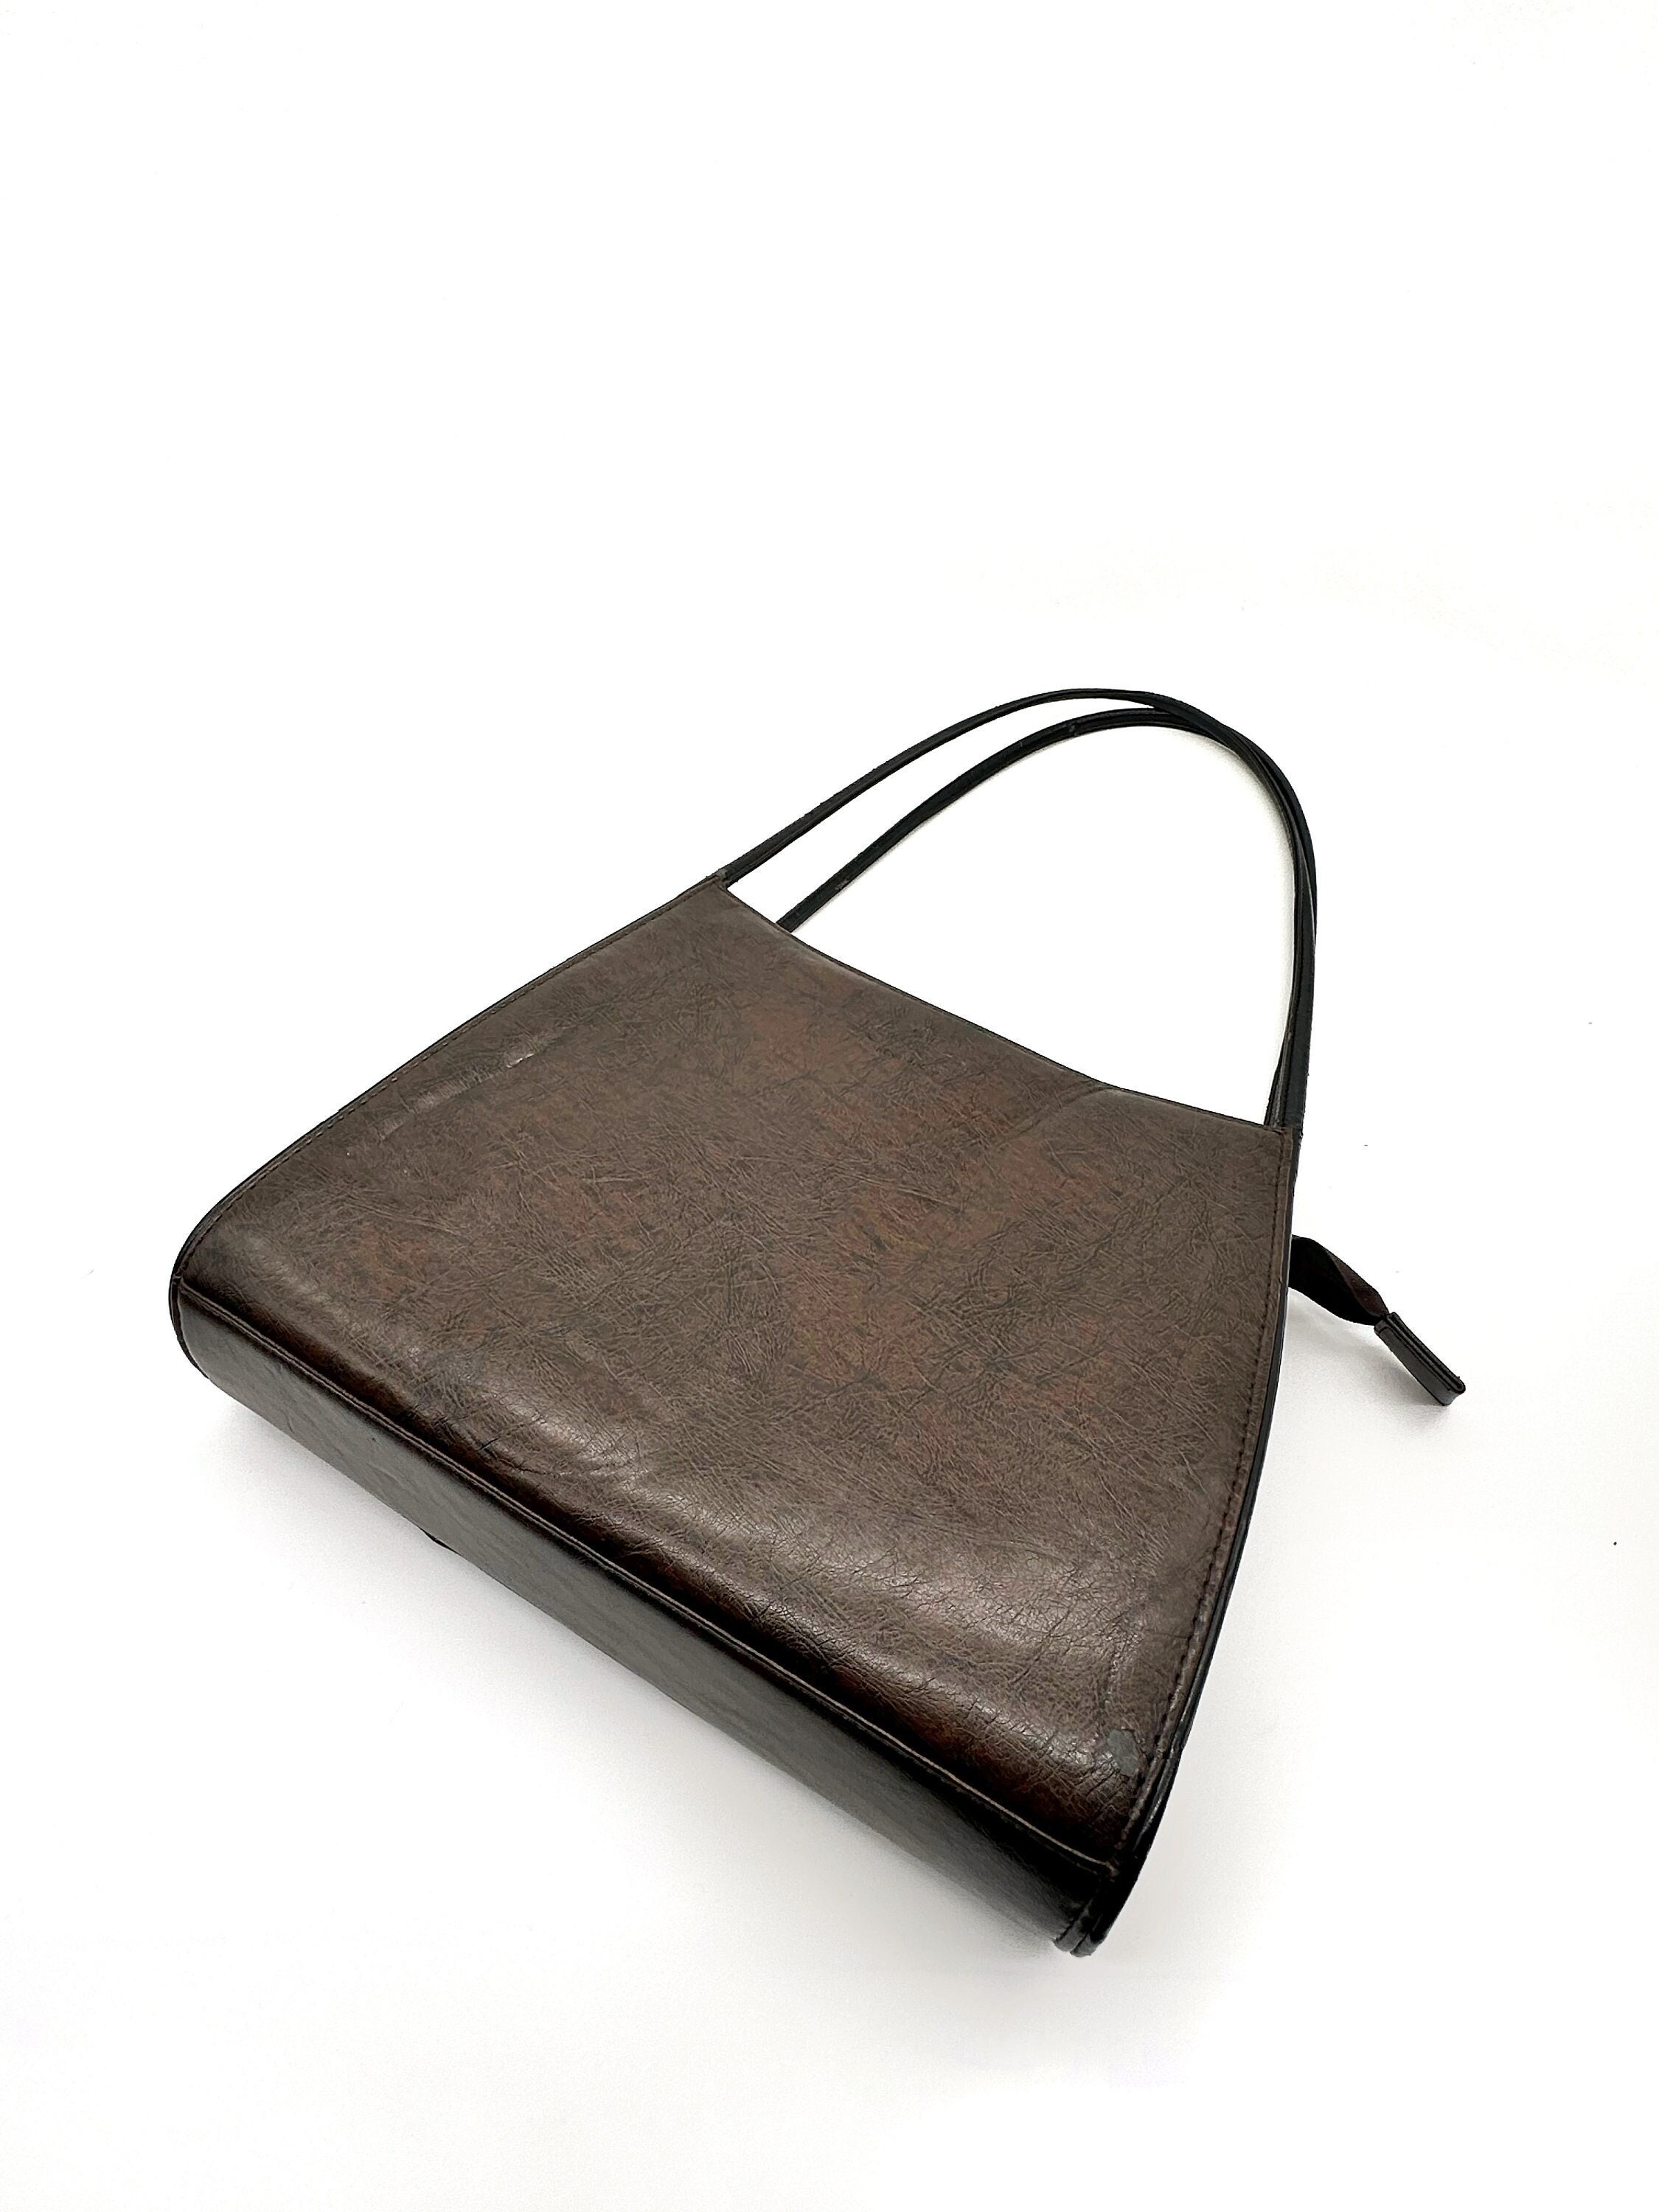 Gucci Vintage Leather Shoulder Bag